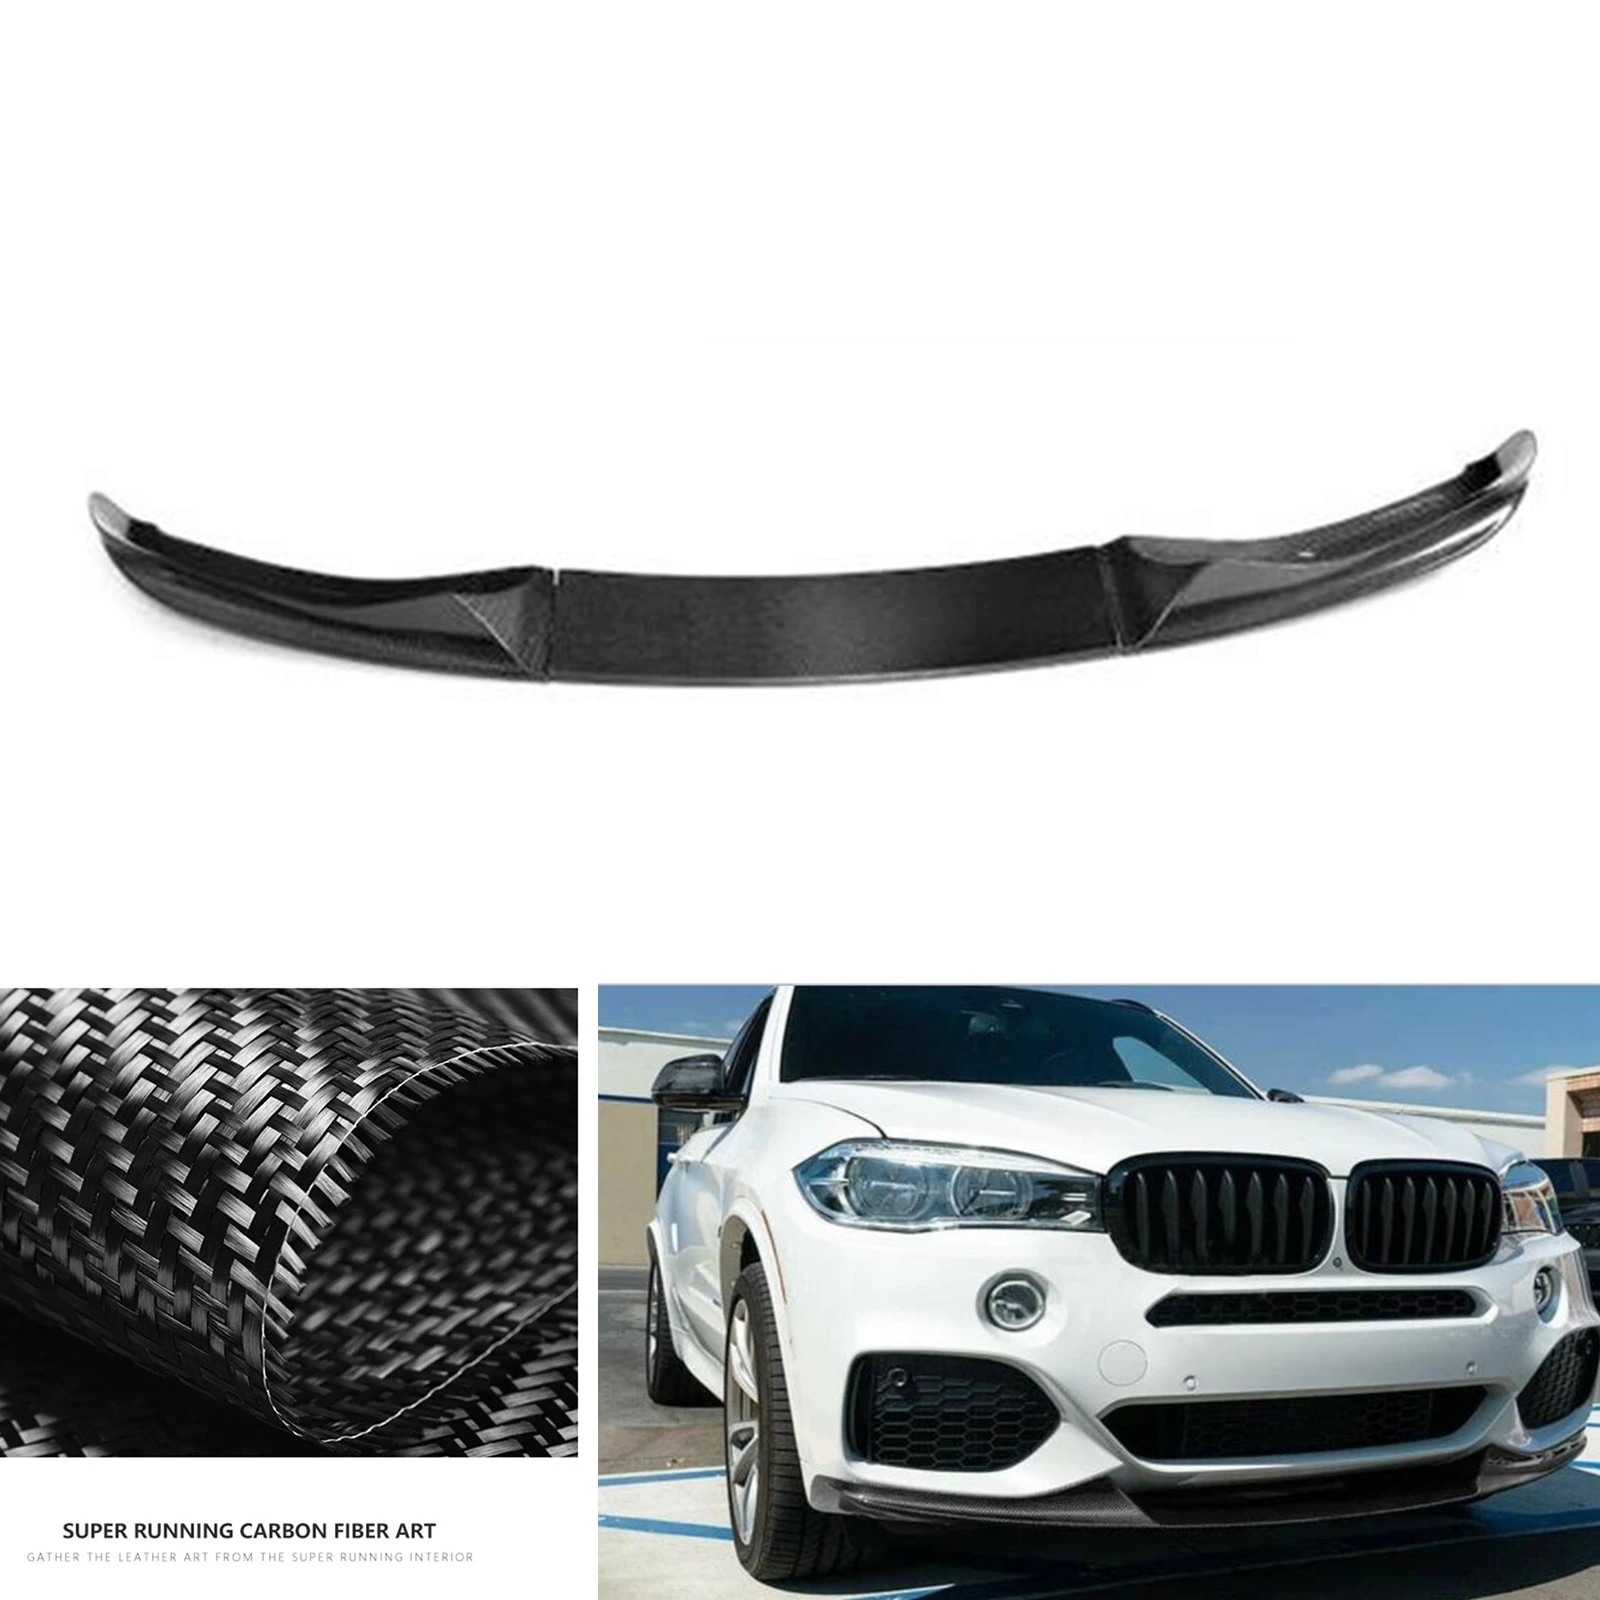 

Передний бампер, спойлер, губа для BMW X5 F15 M-Sport 2014-2018, комплект нижней части корпуса автомобиля из натурального углеродного волокна, защитная пластина, разделитель лезвия